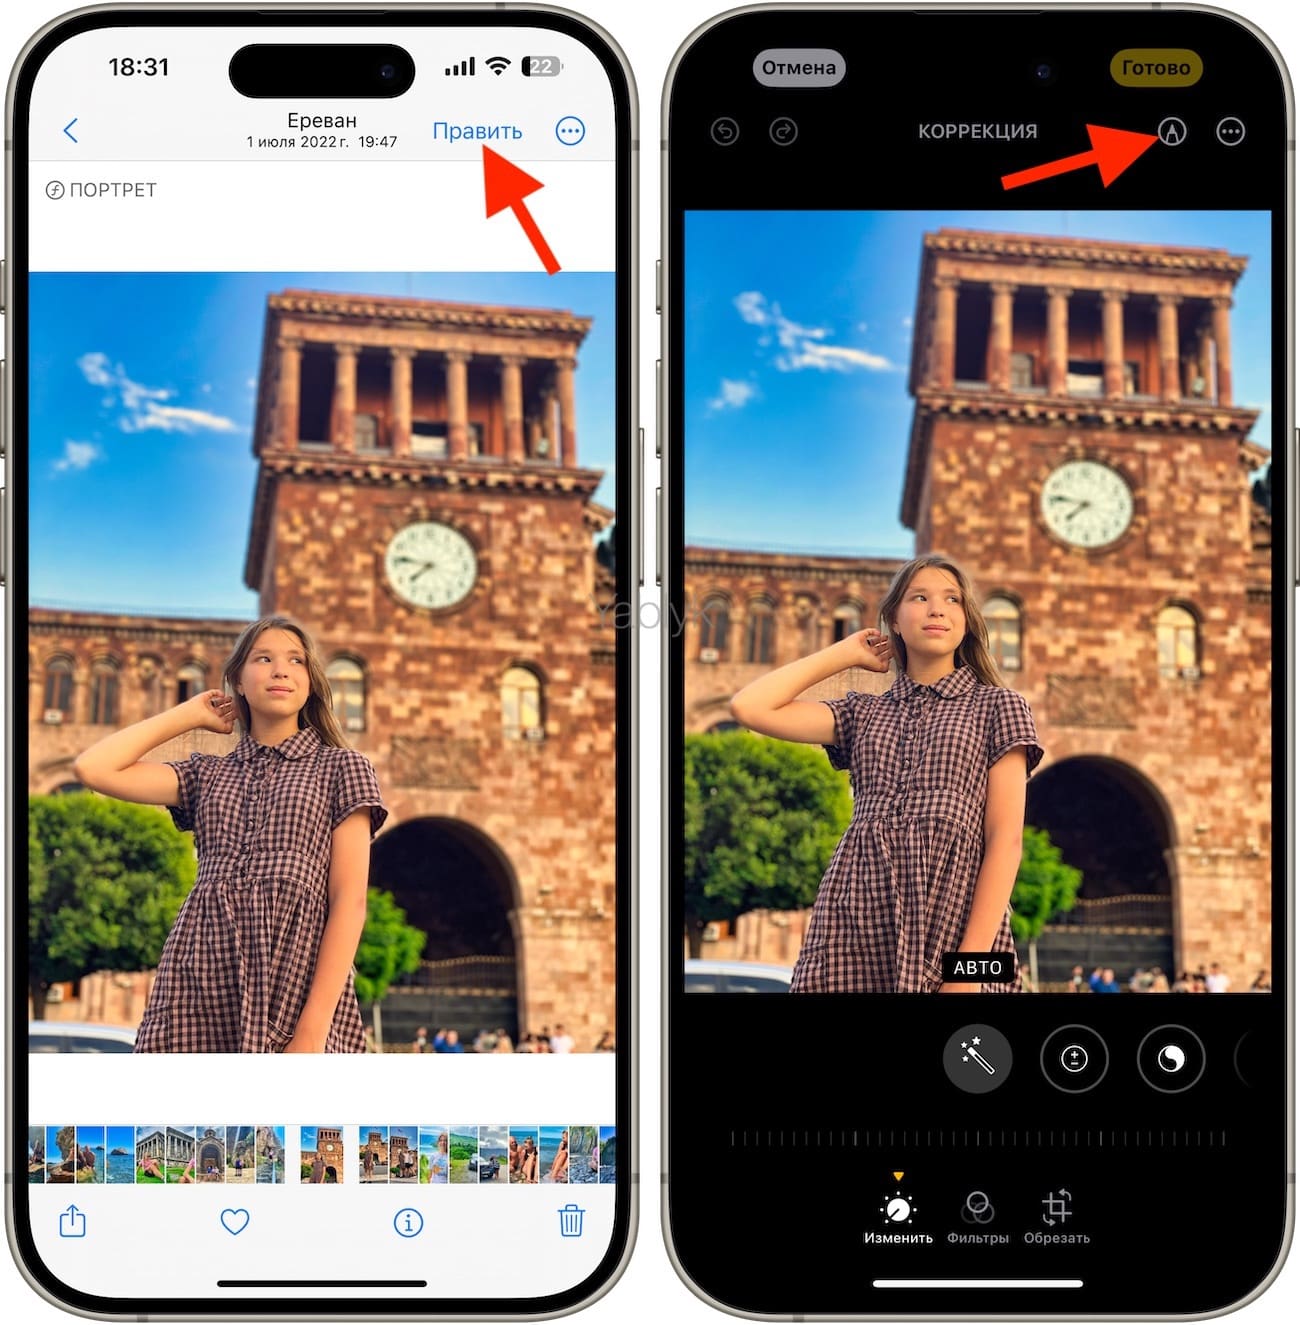 Как добавить смайлик на фото в приложении «Фото» на iPhone или iPad?